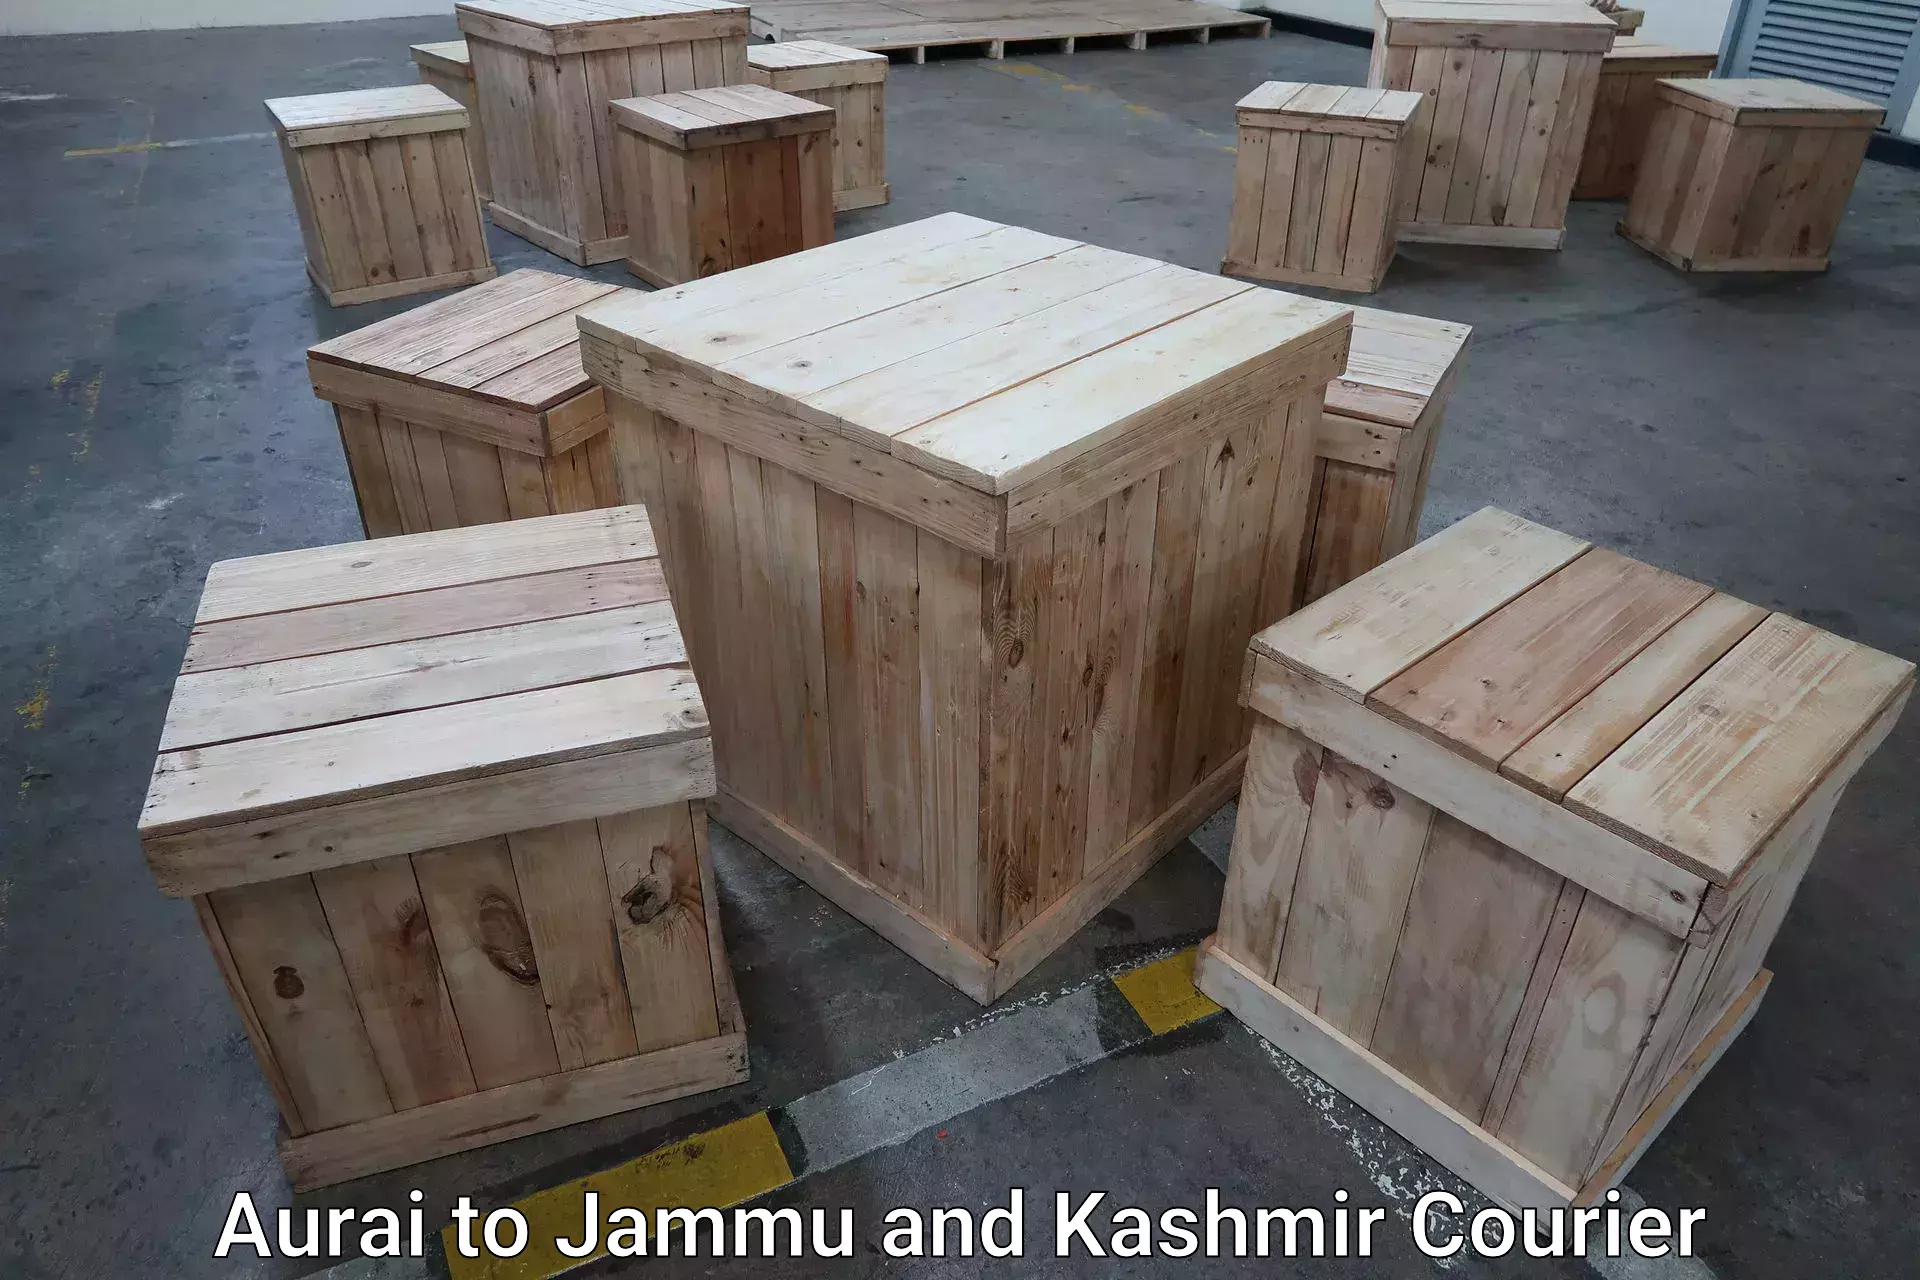 Door-to-door baggage service Aurai to Jammu and Kashmir